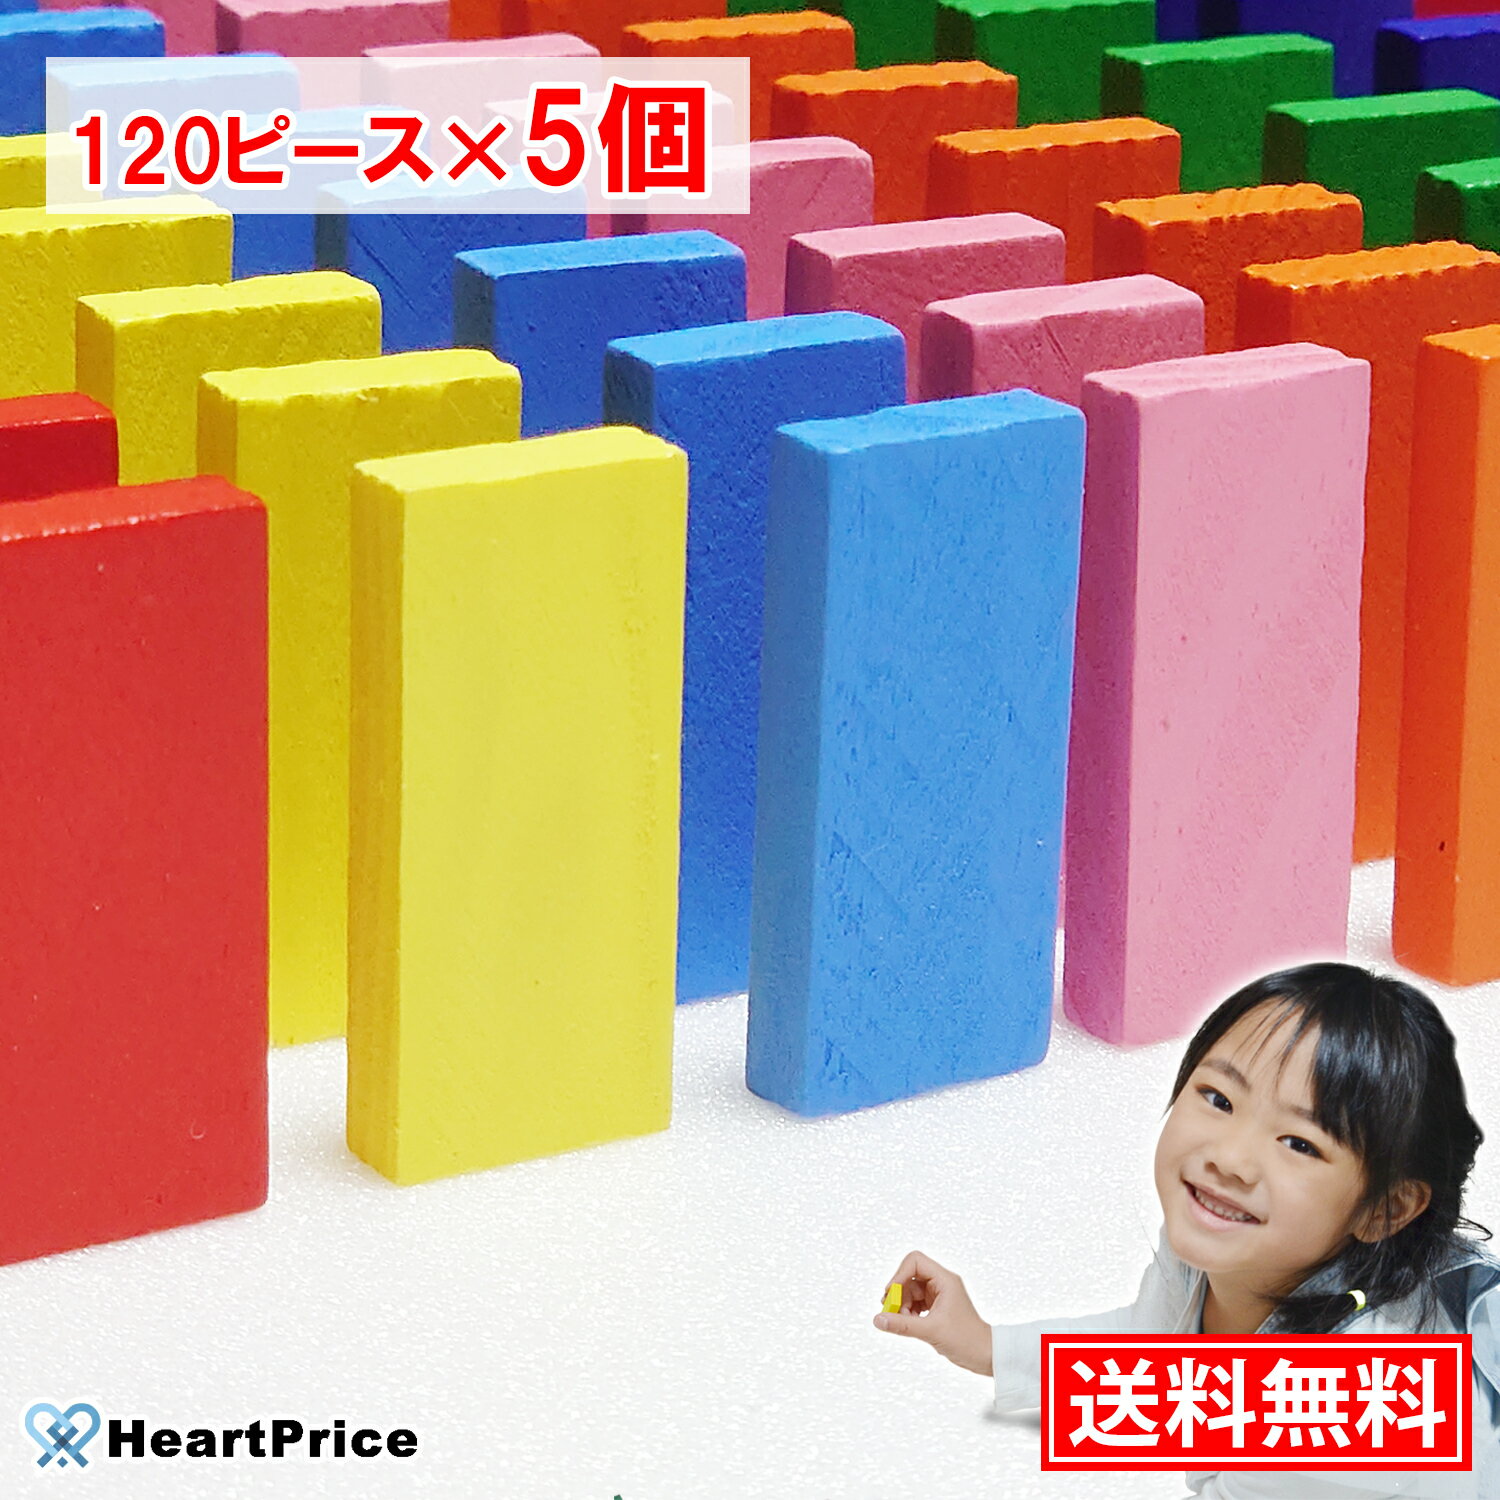 ドミノ おもちゃ ドミノ倒し 600ピース入り (120ピース×5個) 12色セット まとめ買い 積み木 知育玩具 木製 女の子 誕…